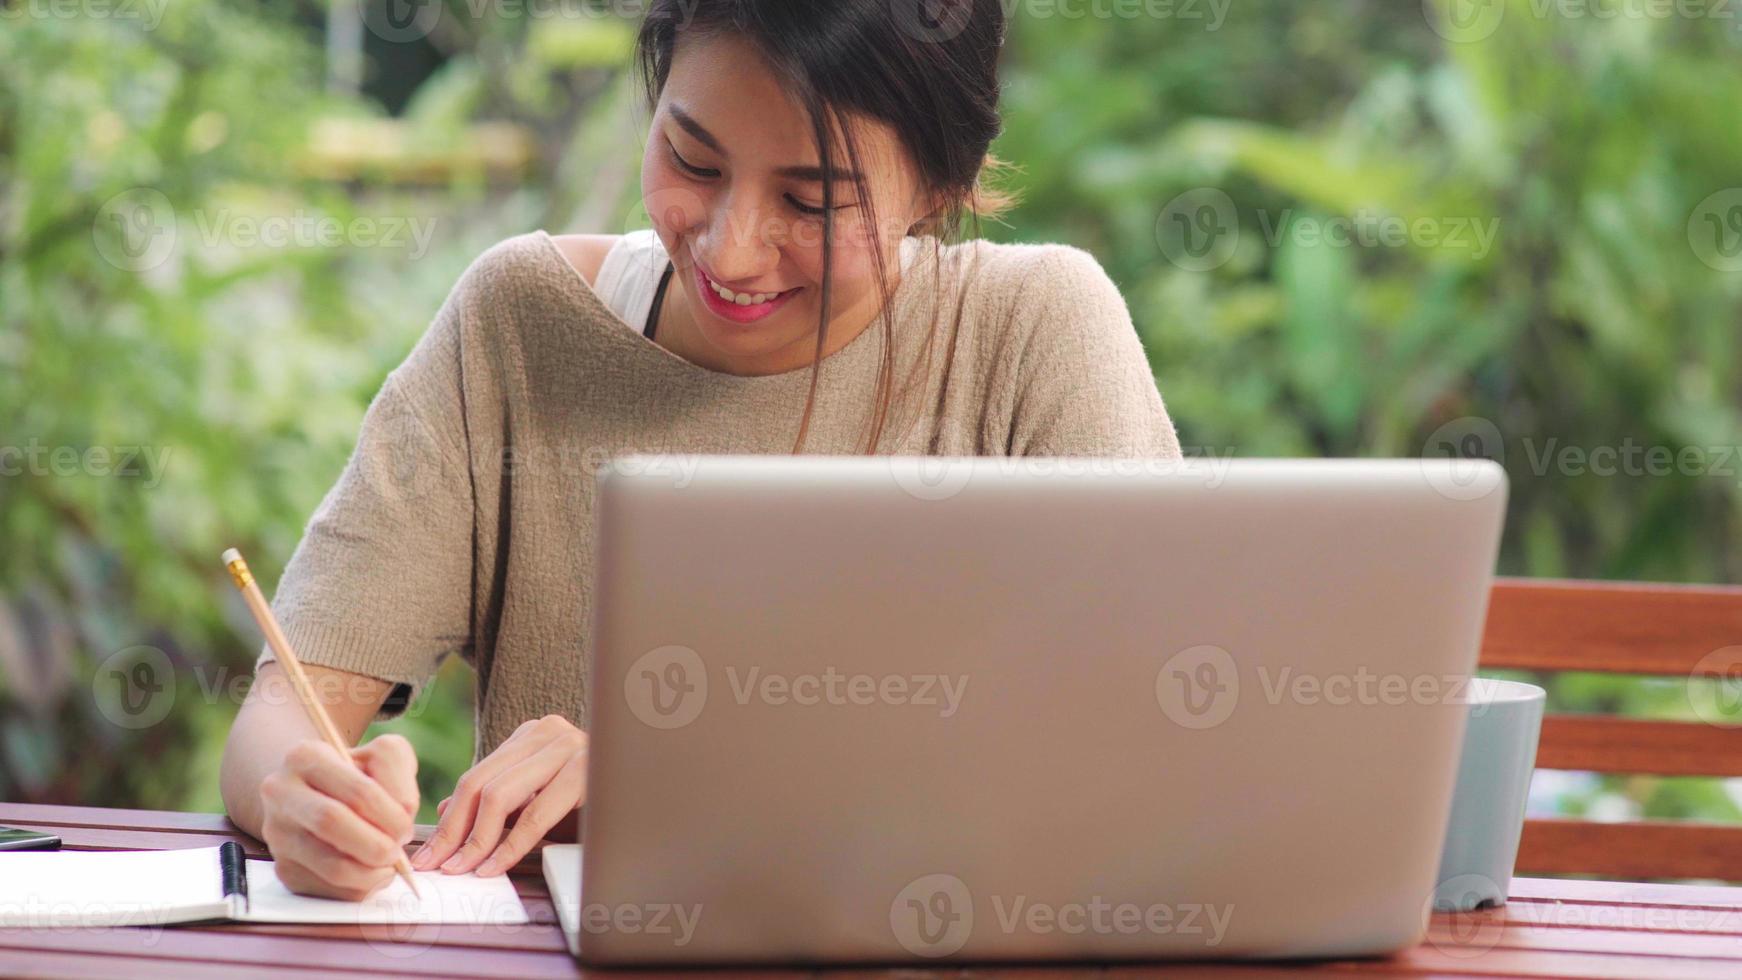 frilans asiatisk kvinna som arbetar hemma, affärskvinna som arbetar på bärbar dator sitter på bordet i trädgården på morgonen. livsstil kvinnor arbetar hemma koncept. foto